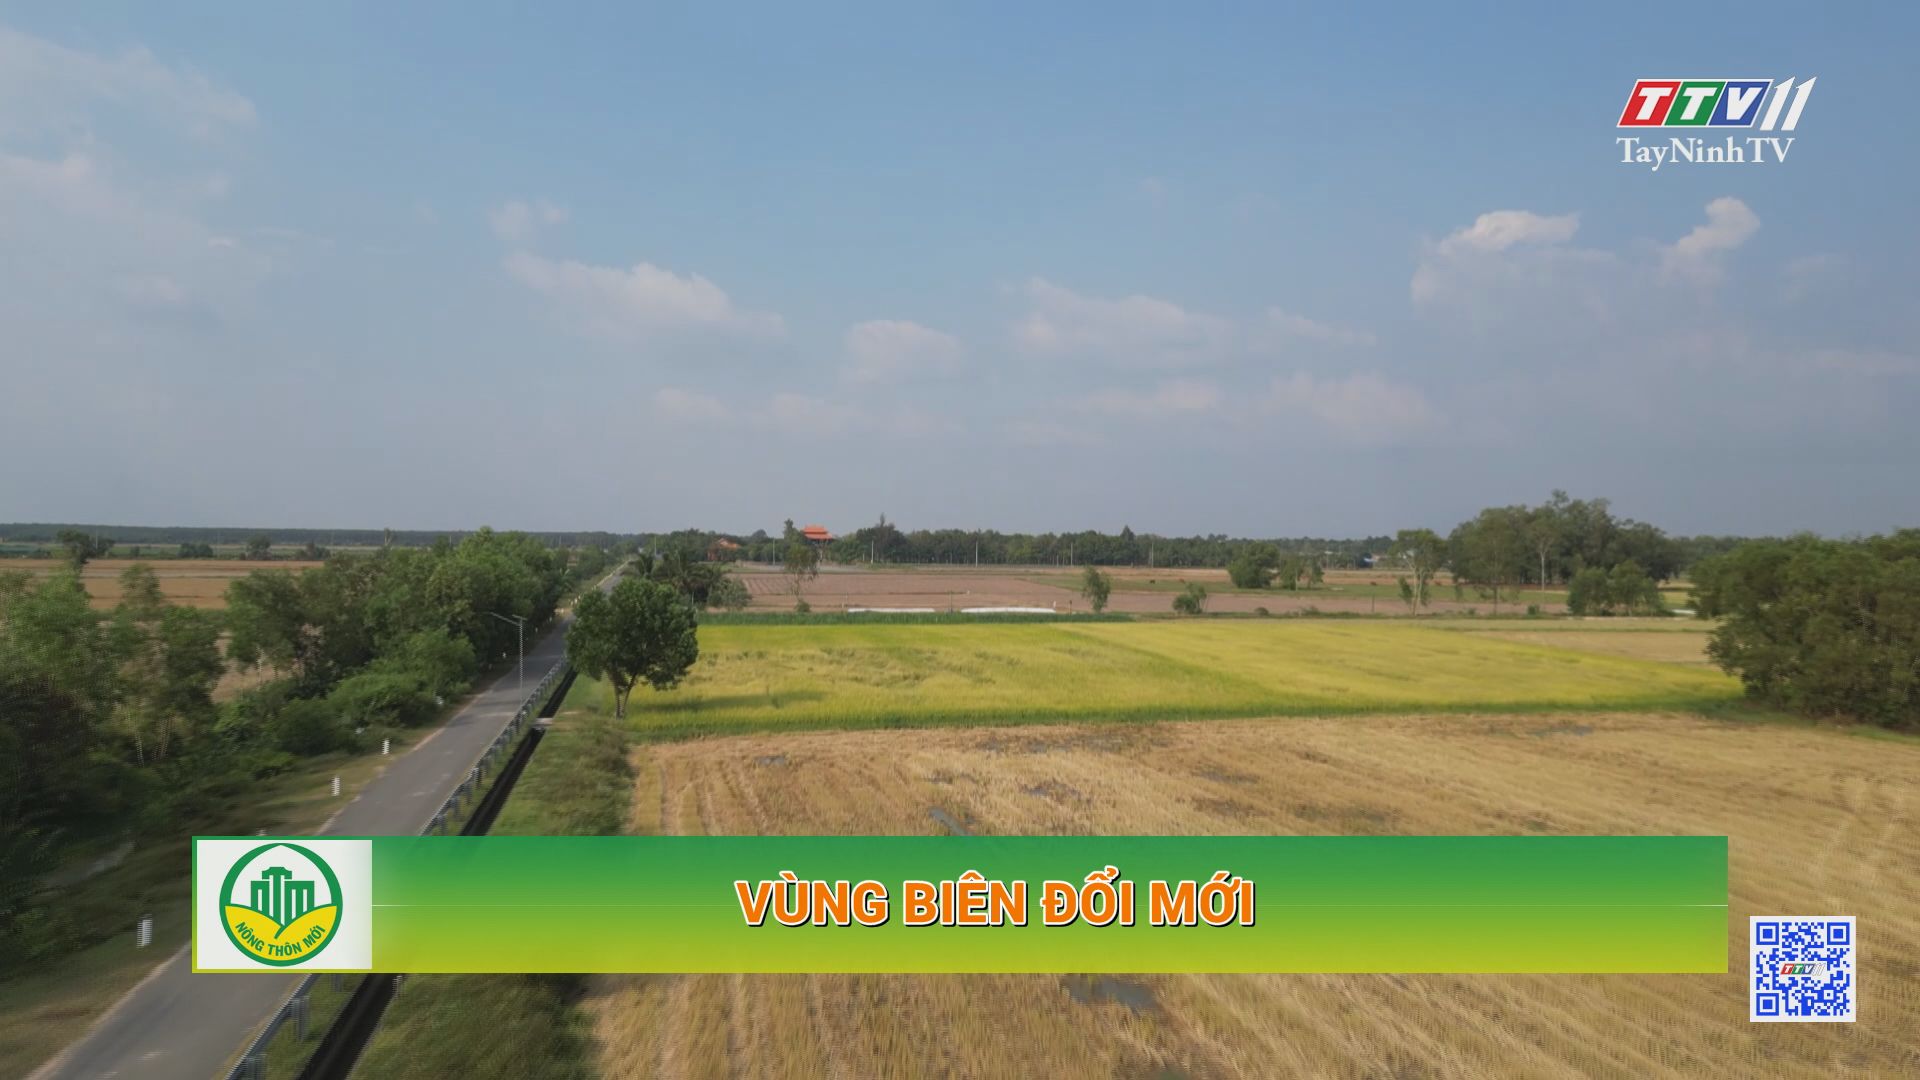 Vùng biên đổi mới | Tây Ninh xây dựng nông thôn mới | TayNinhTV